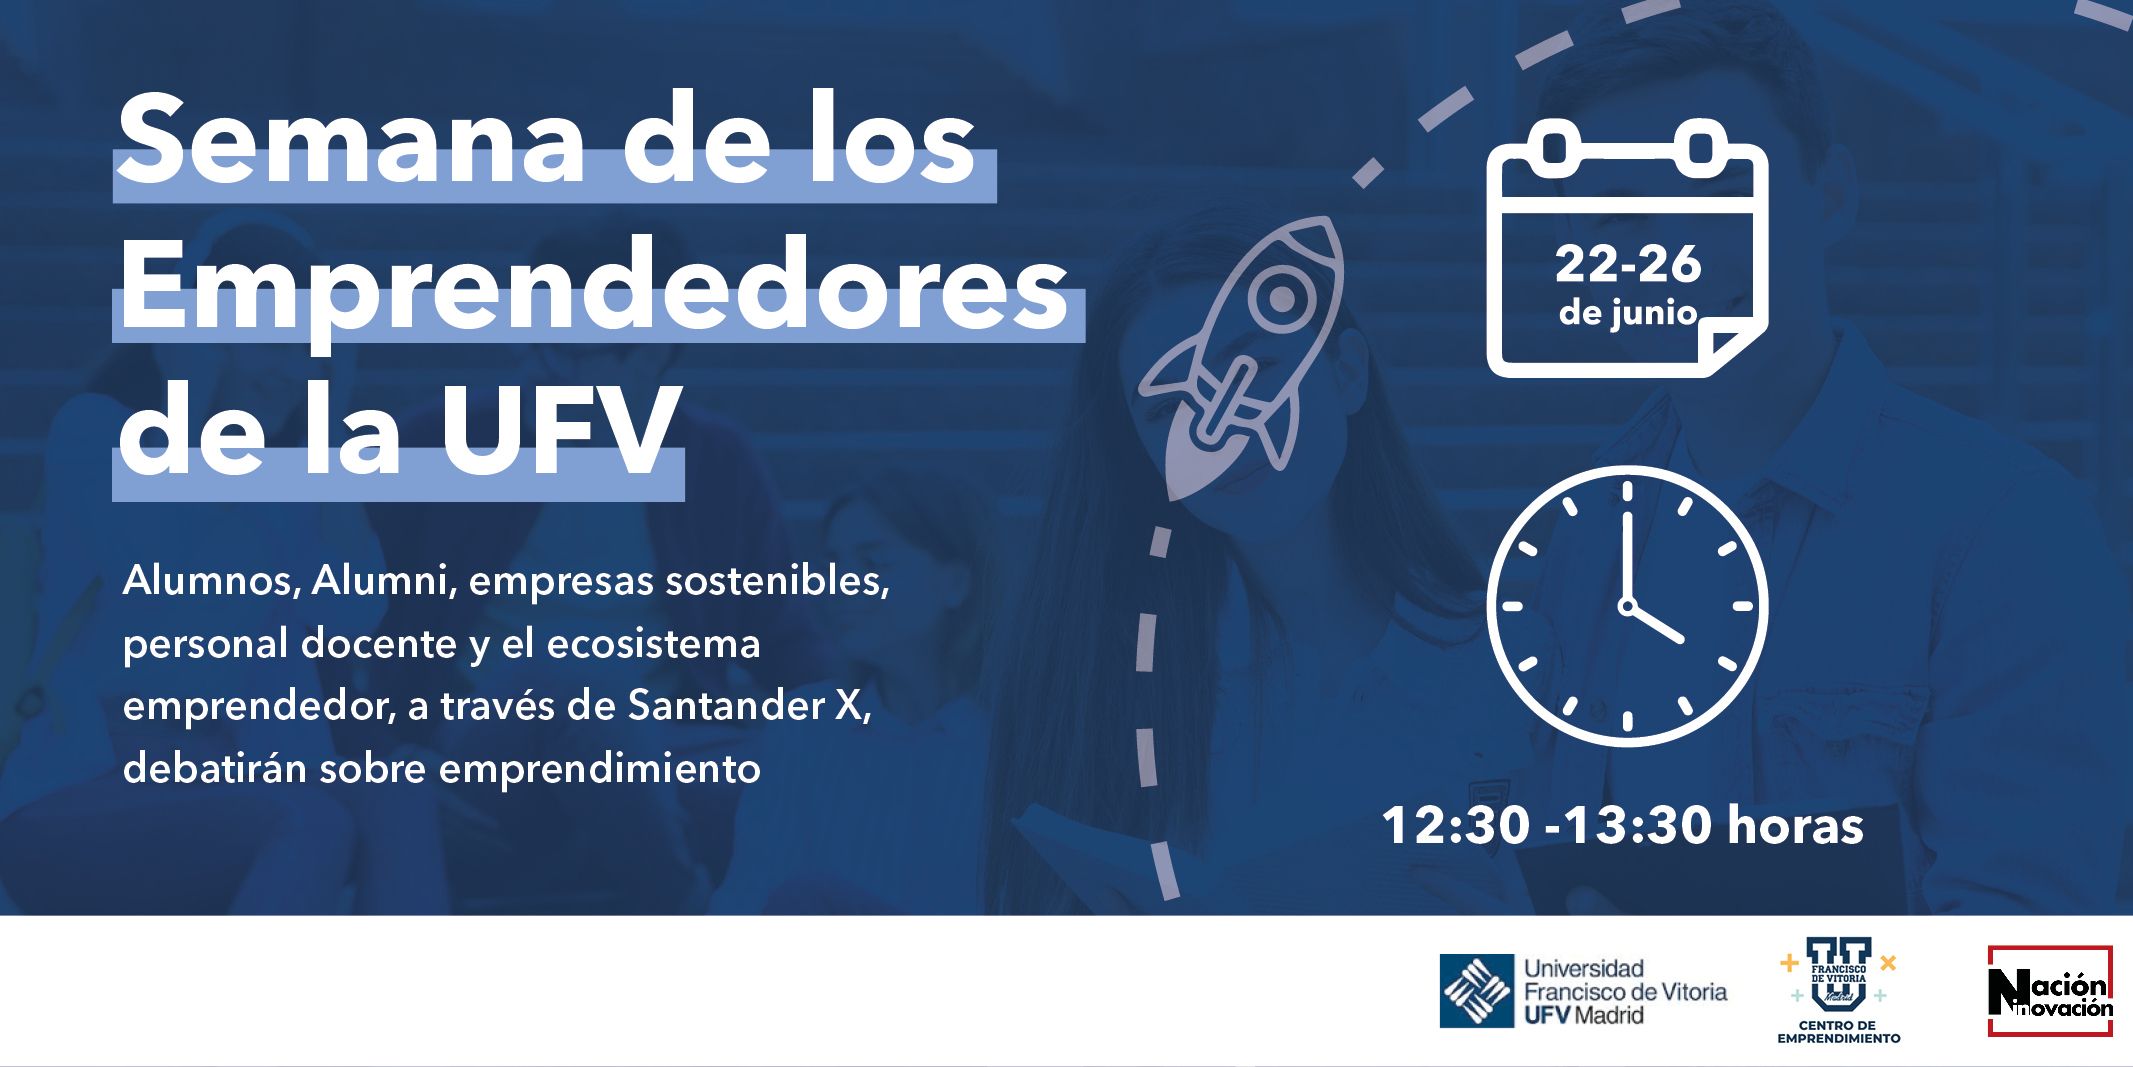 La Universidad Francisco de Vitoria celebra la Semana de los Emprendedores para dar voz al emprendimiento en la universidad